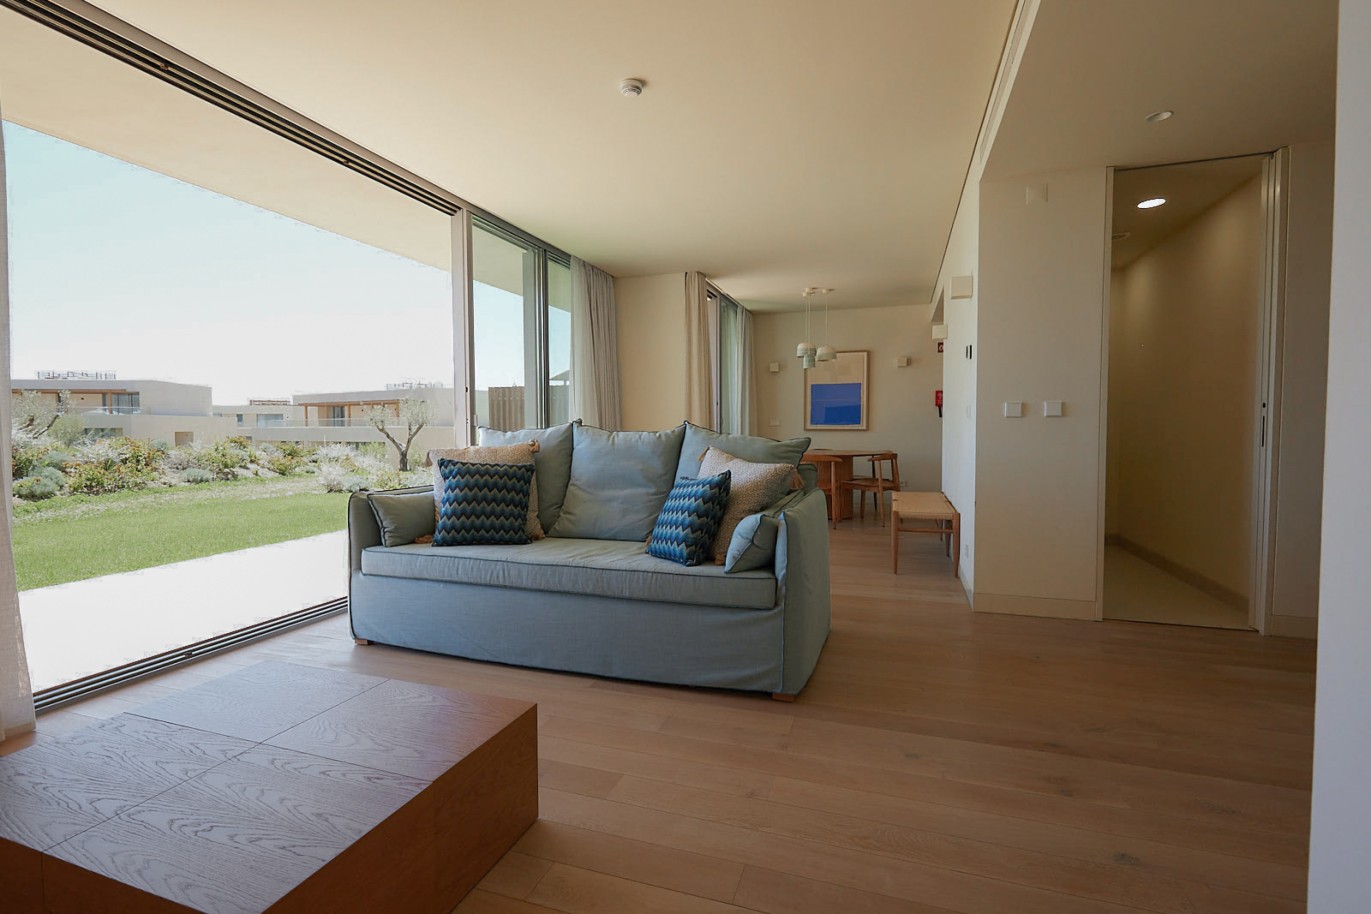 Piso de 2 dormitorios en complejo, en venta en Porches, Algarve_230673